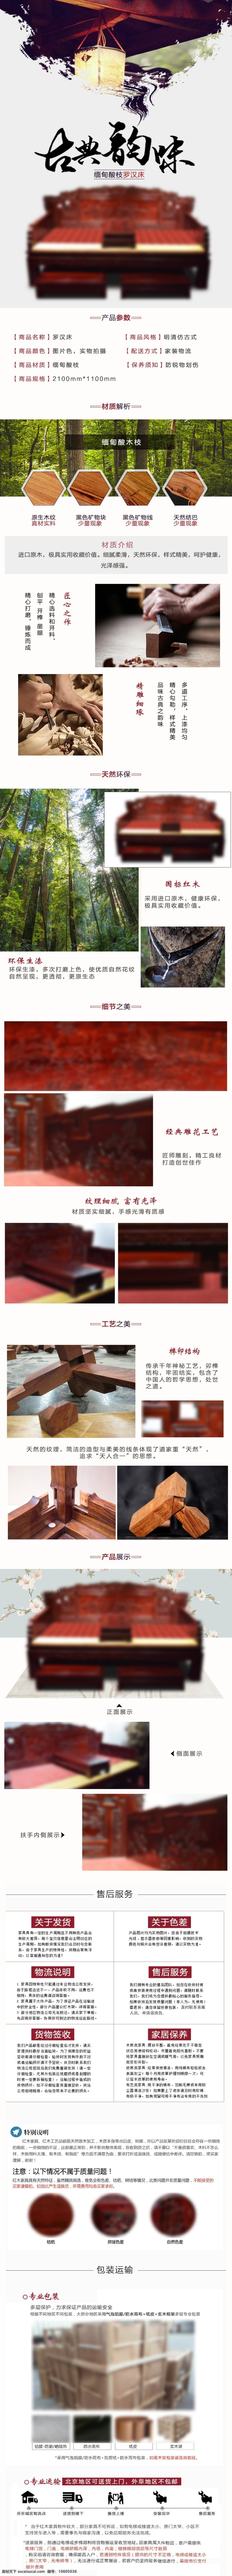 红木 罗汉床 家具 古典 中式 简约 详情 页 家具详情页 红木家具 详情页模板